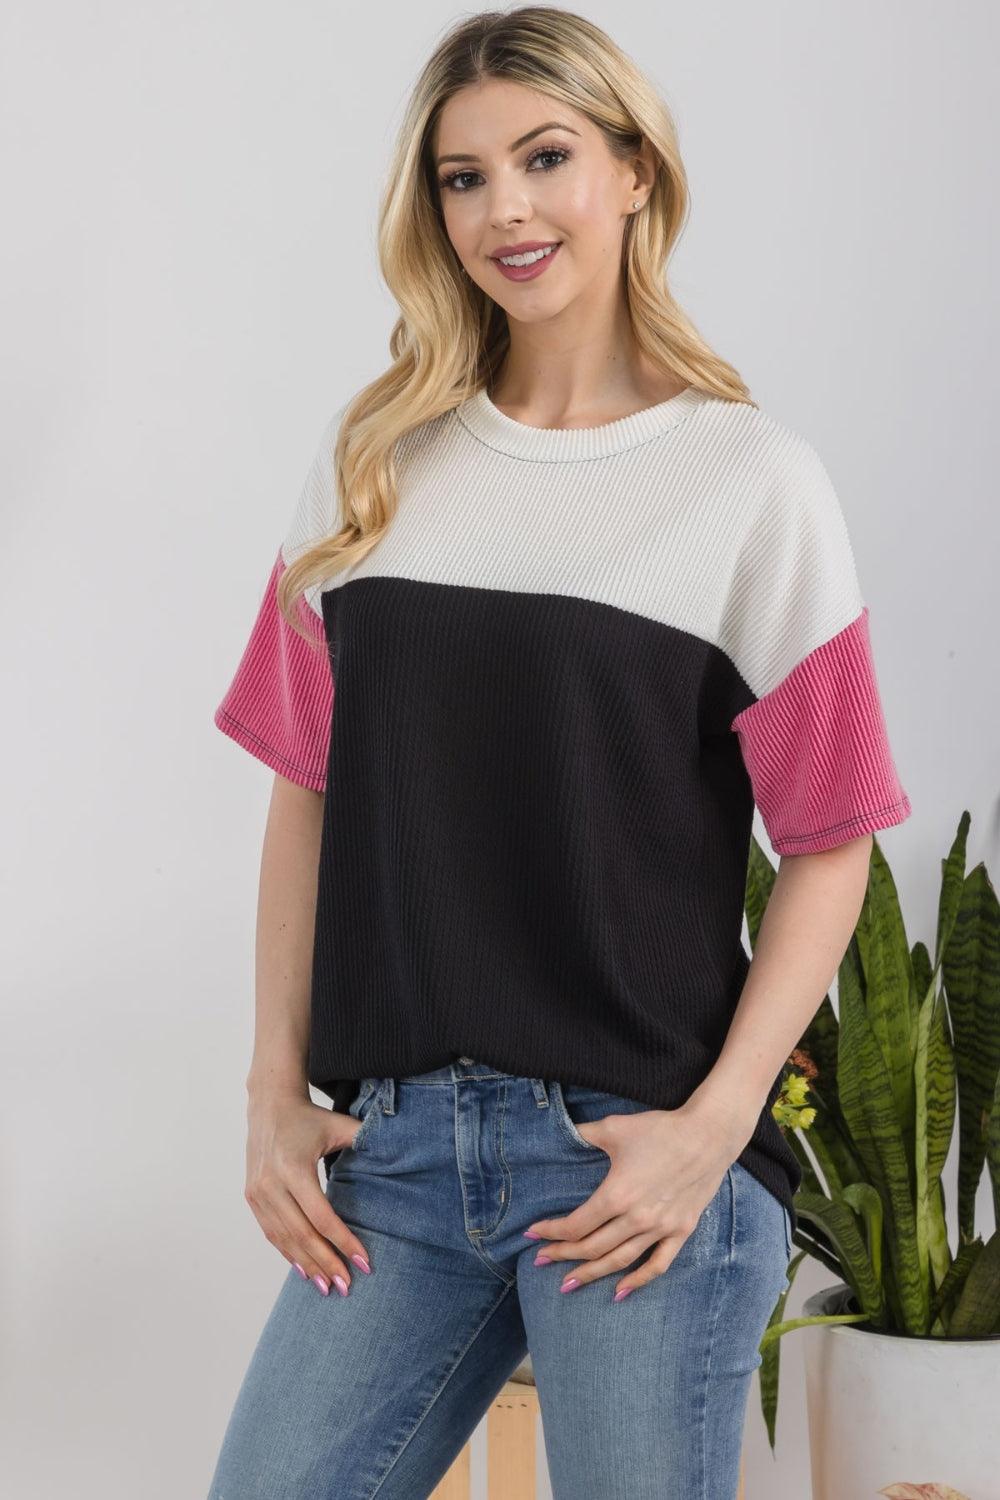 Celeste Full Size Ribbed Color Block T-Shirt - Immenzive